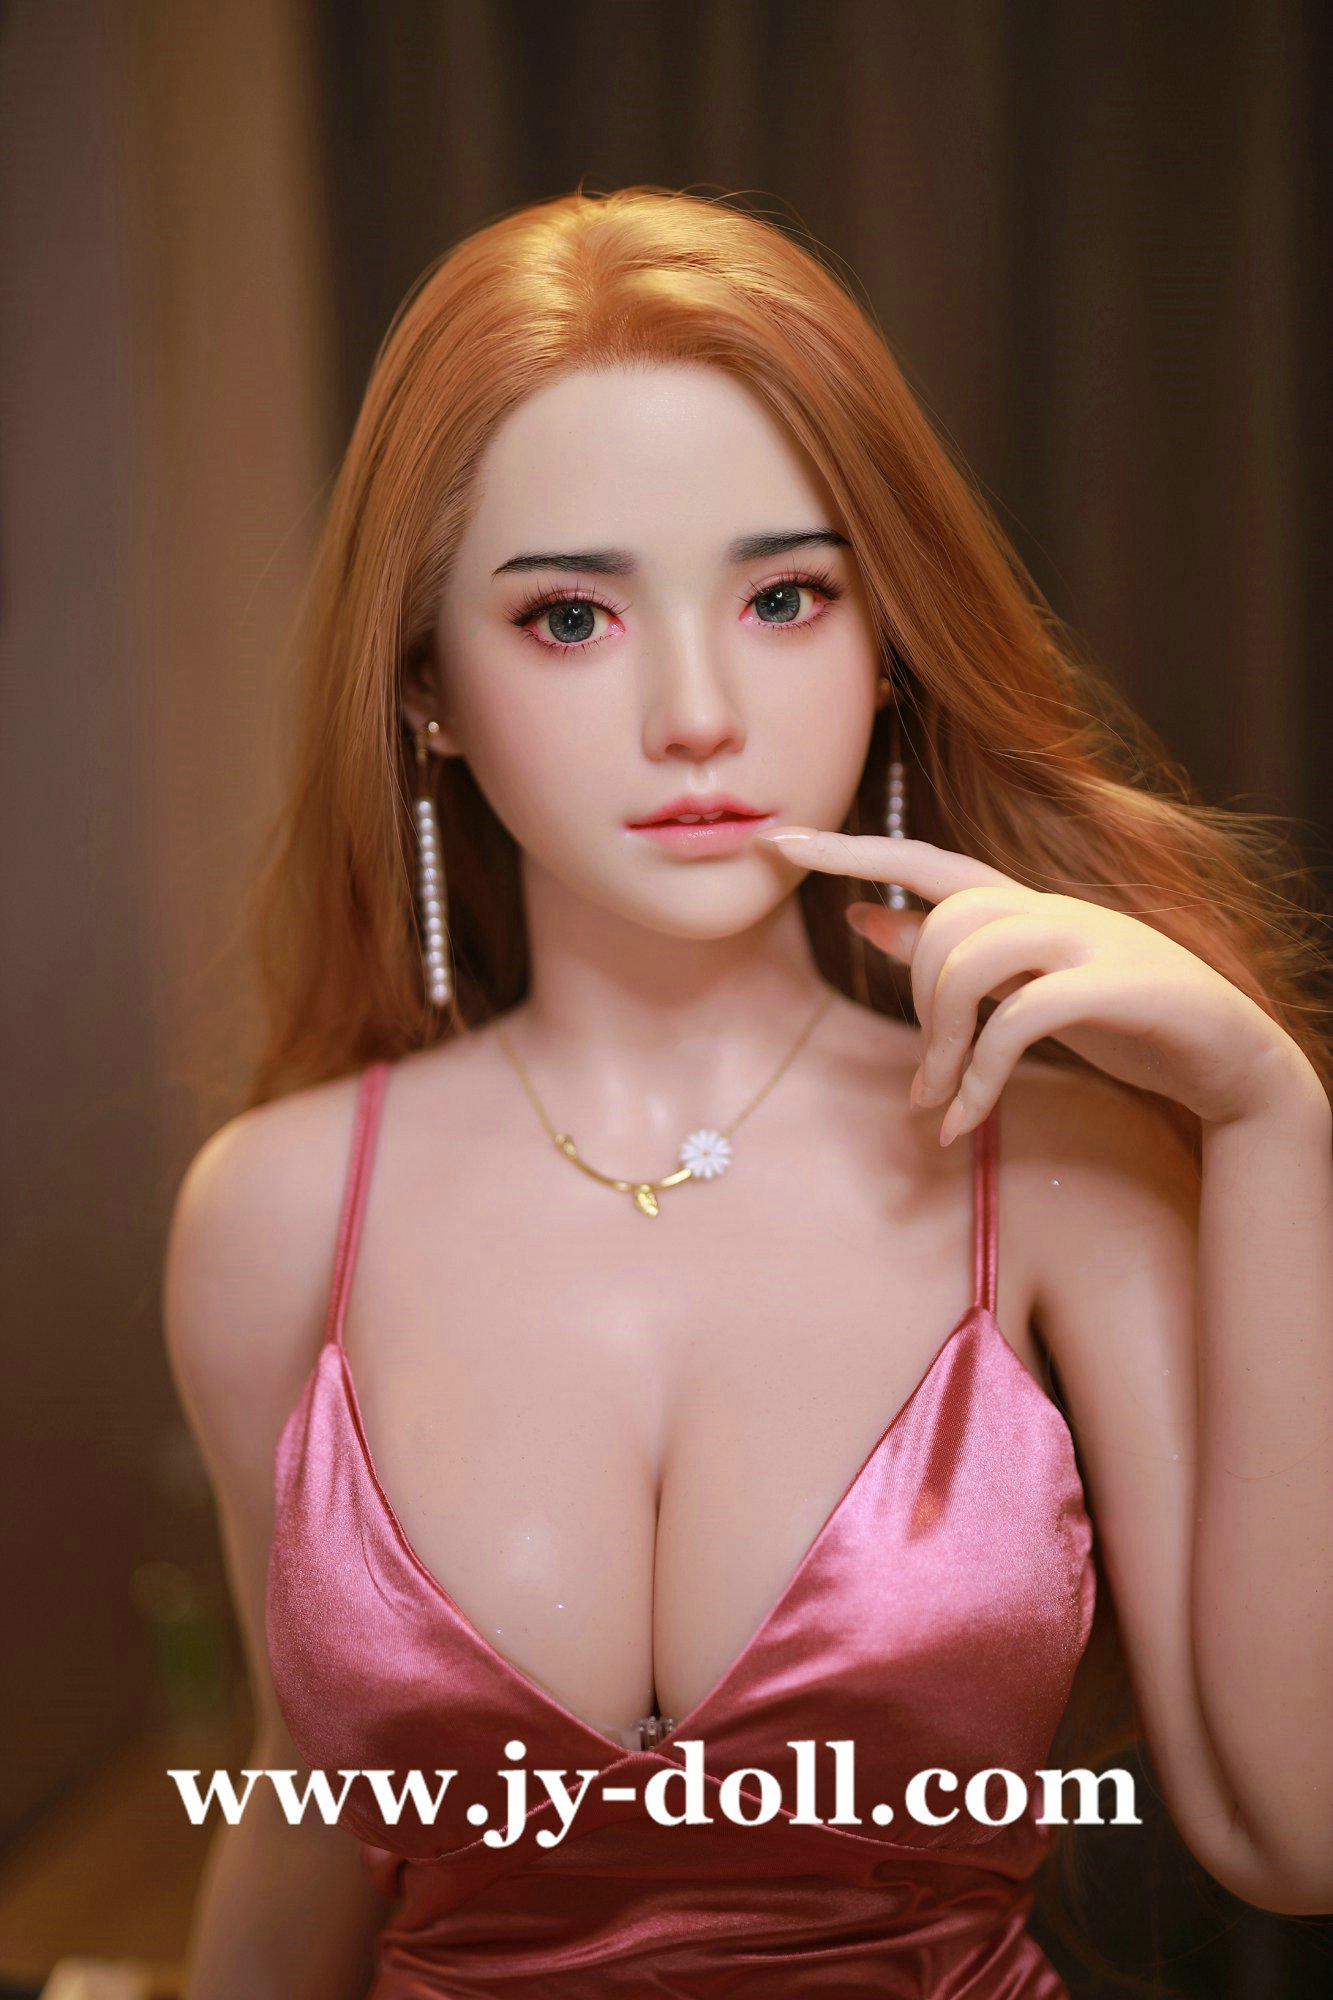 JY Doll 163cm full silicone doll Yunshu